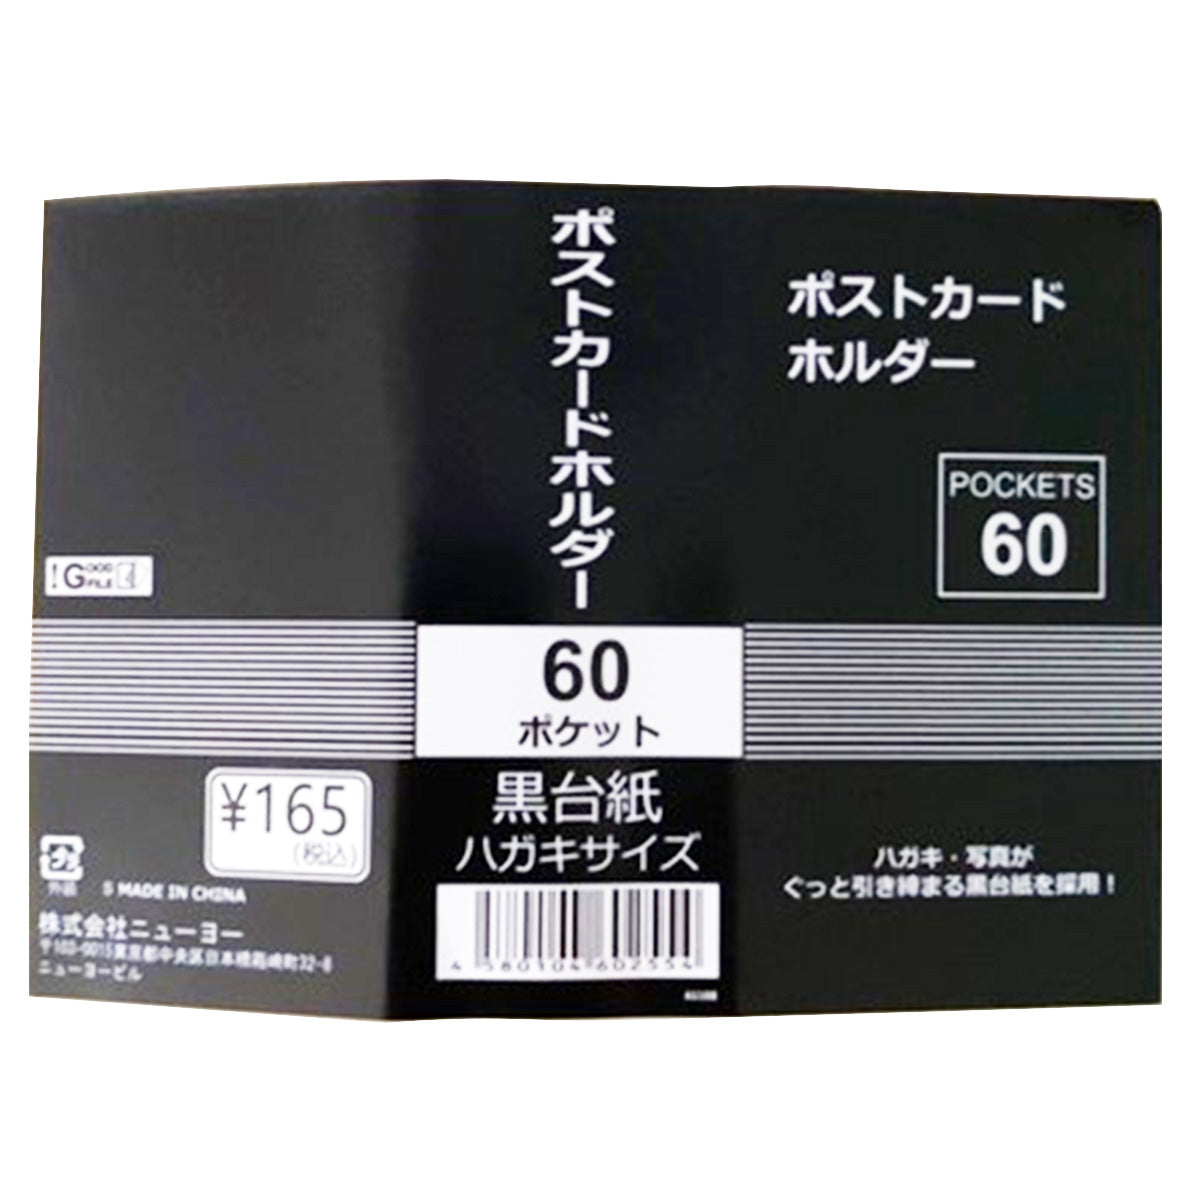 葉書ホルダー 黒台紙 ポストカードホルダー 60P ケース付 9001/352010